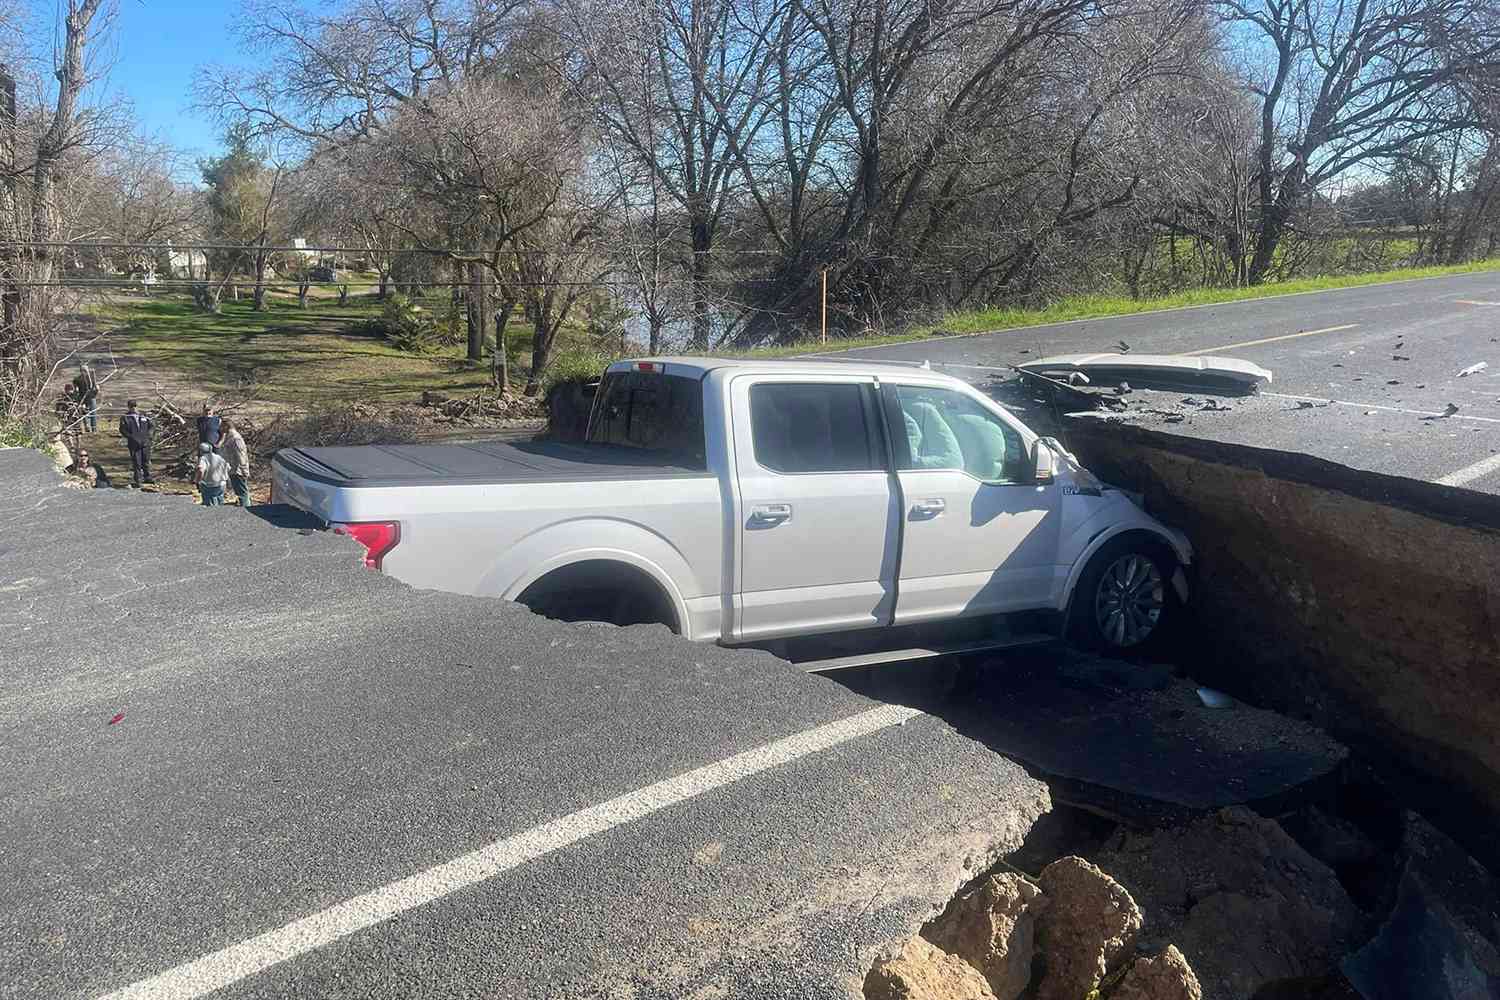 Calif. Cops bei „Loss for Words“, nachdem 3 Autos auf einer markierten geschlossenen Straße in ein Loch gefallen sind: „Das kann nicht echt sein“